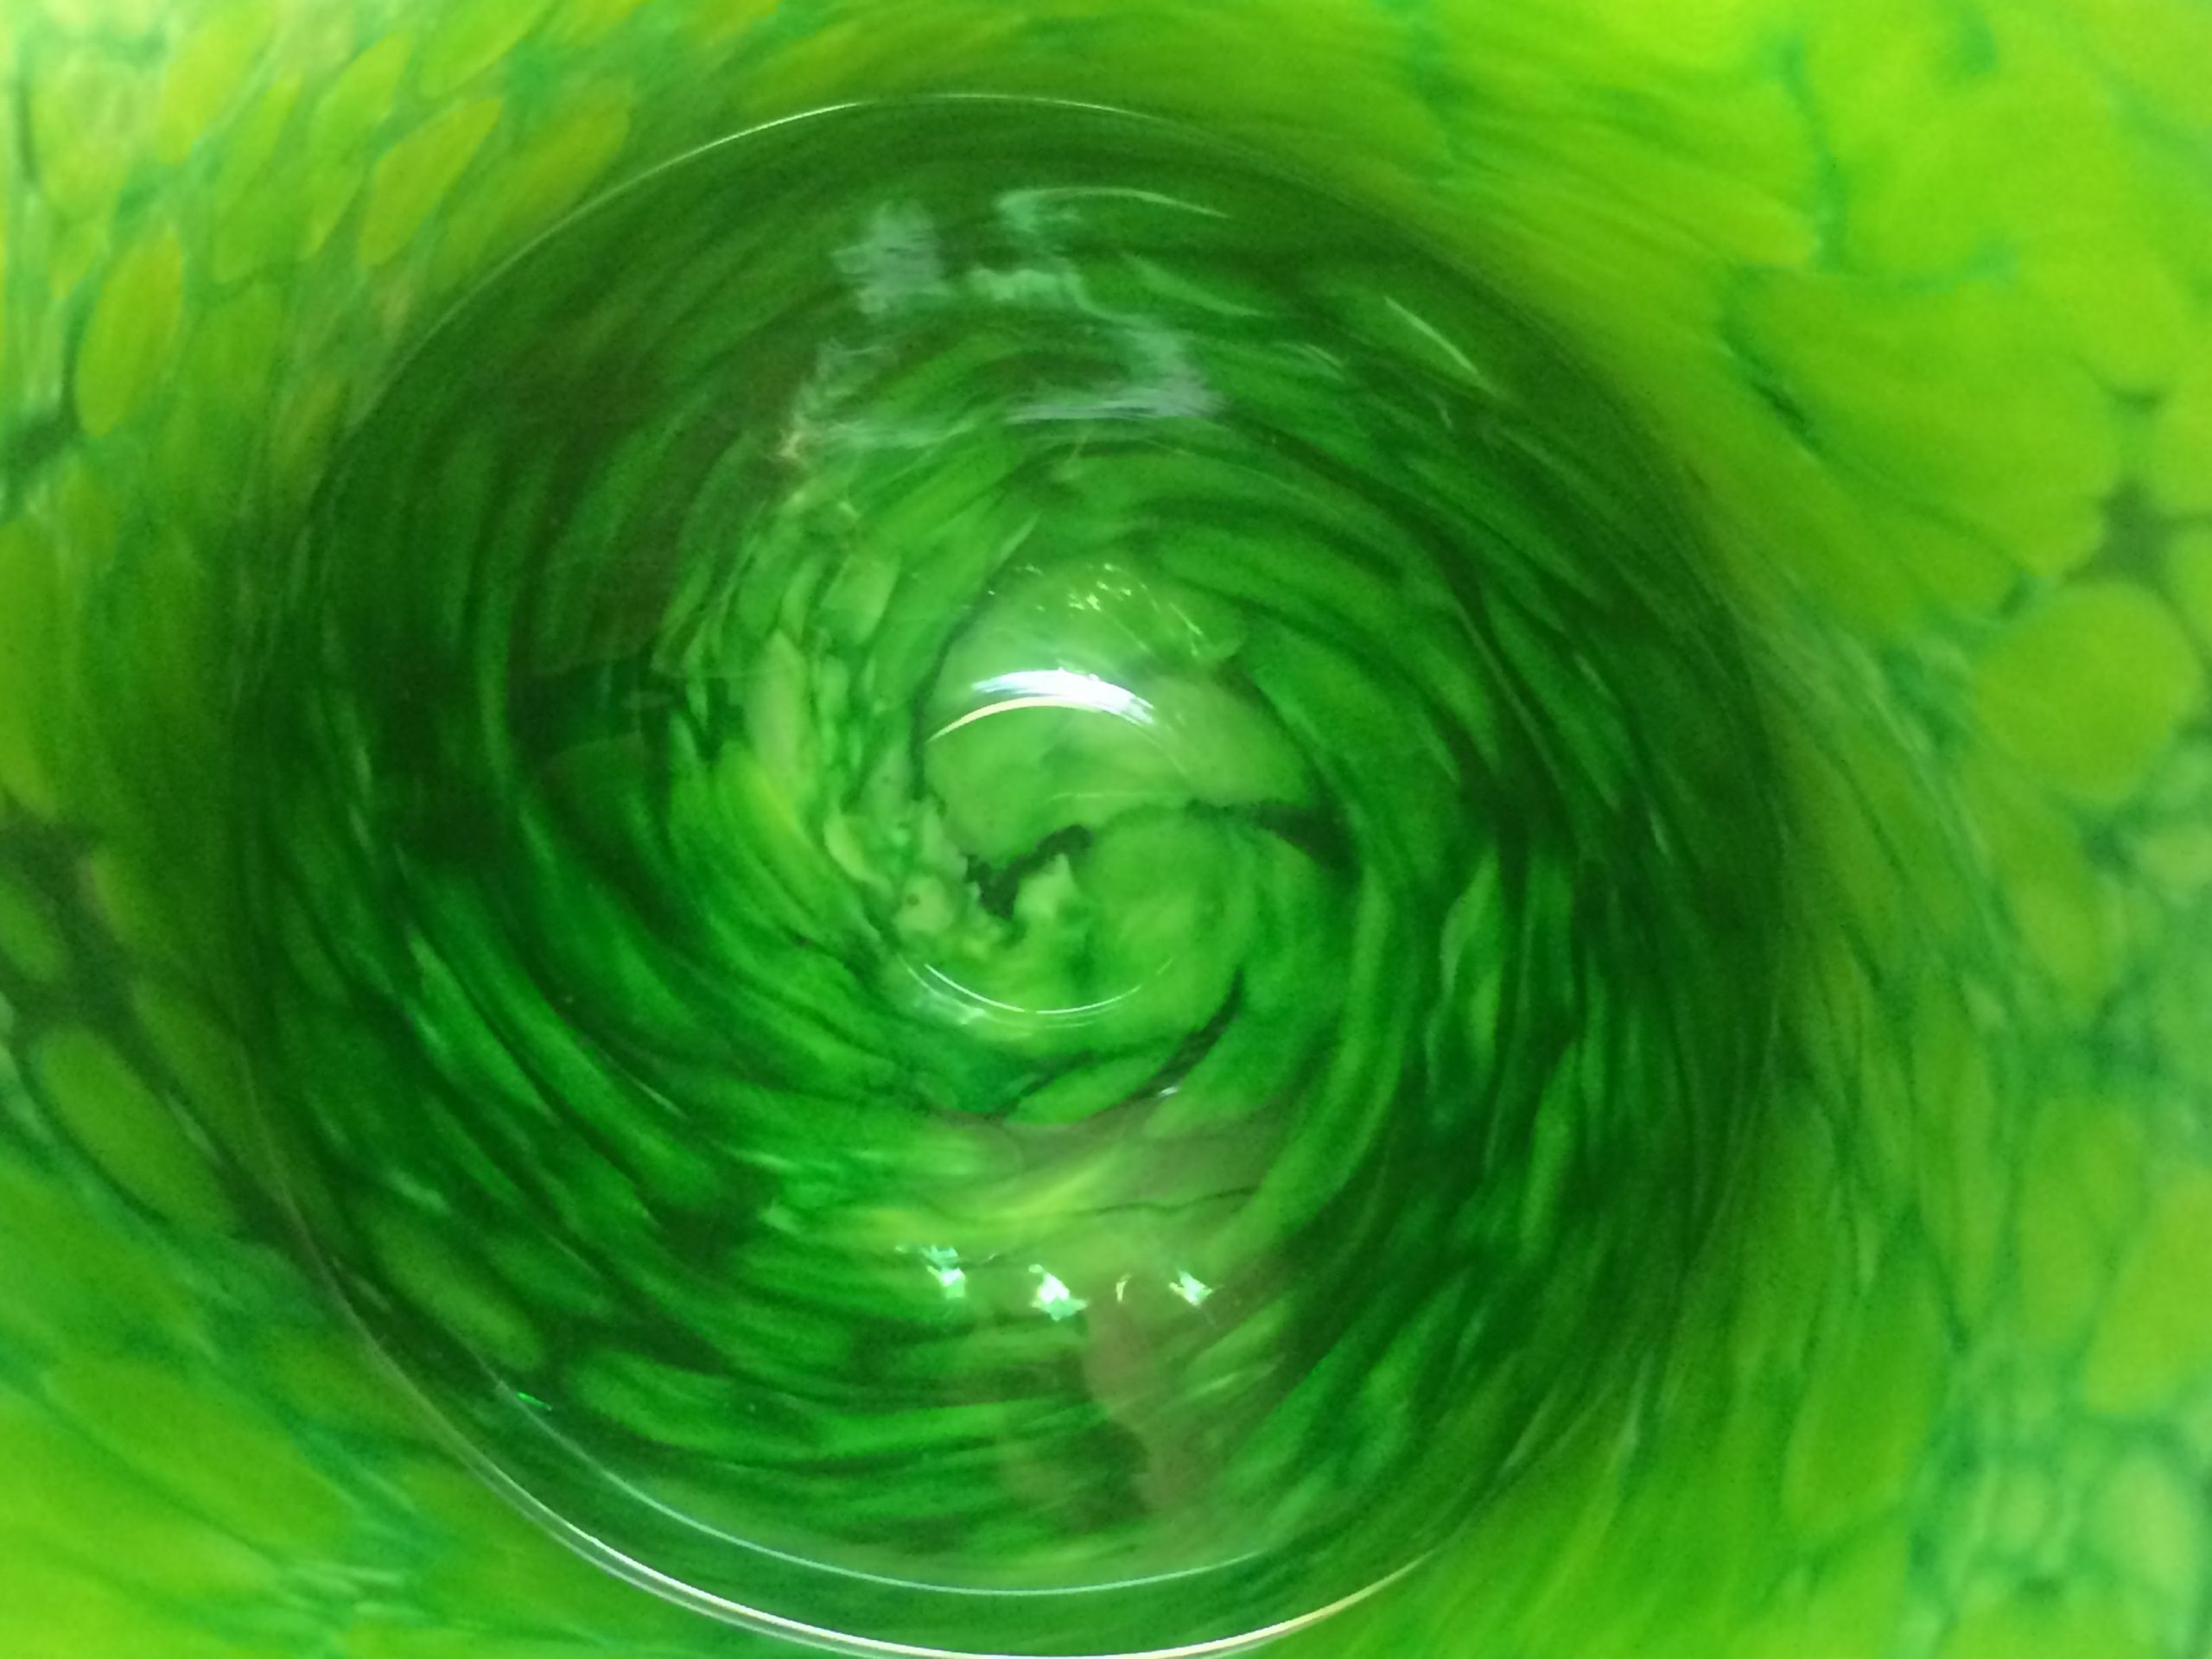 Lensed bottom of a green glass